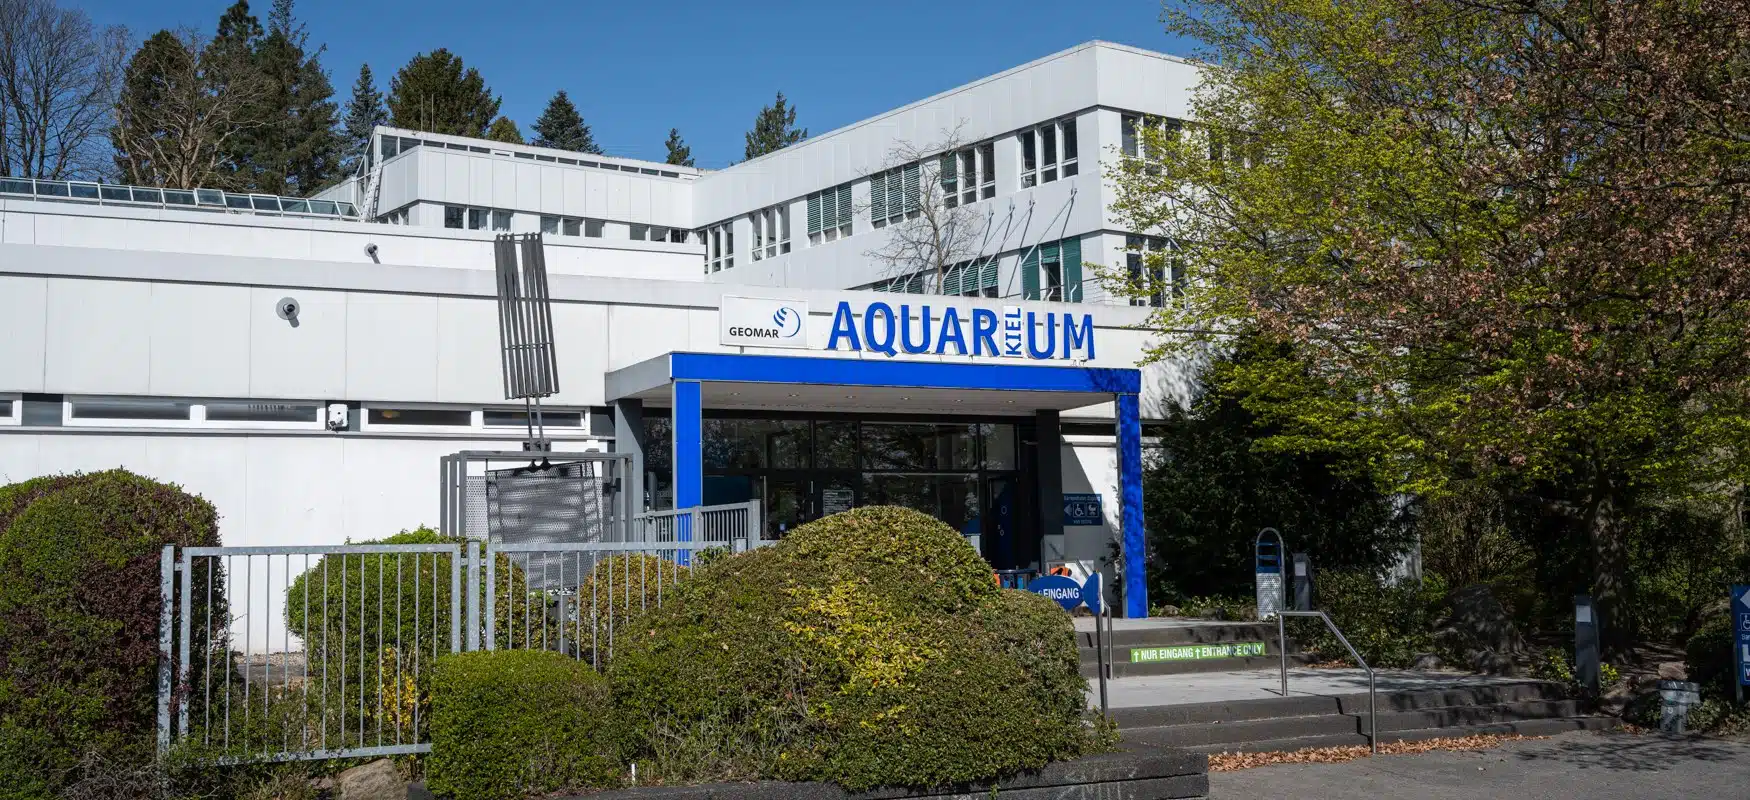 DSC 1632 Aquarium GEOMAR Kiel